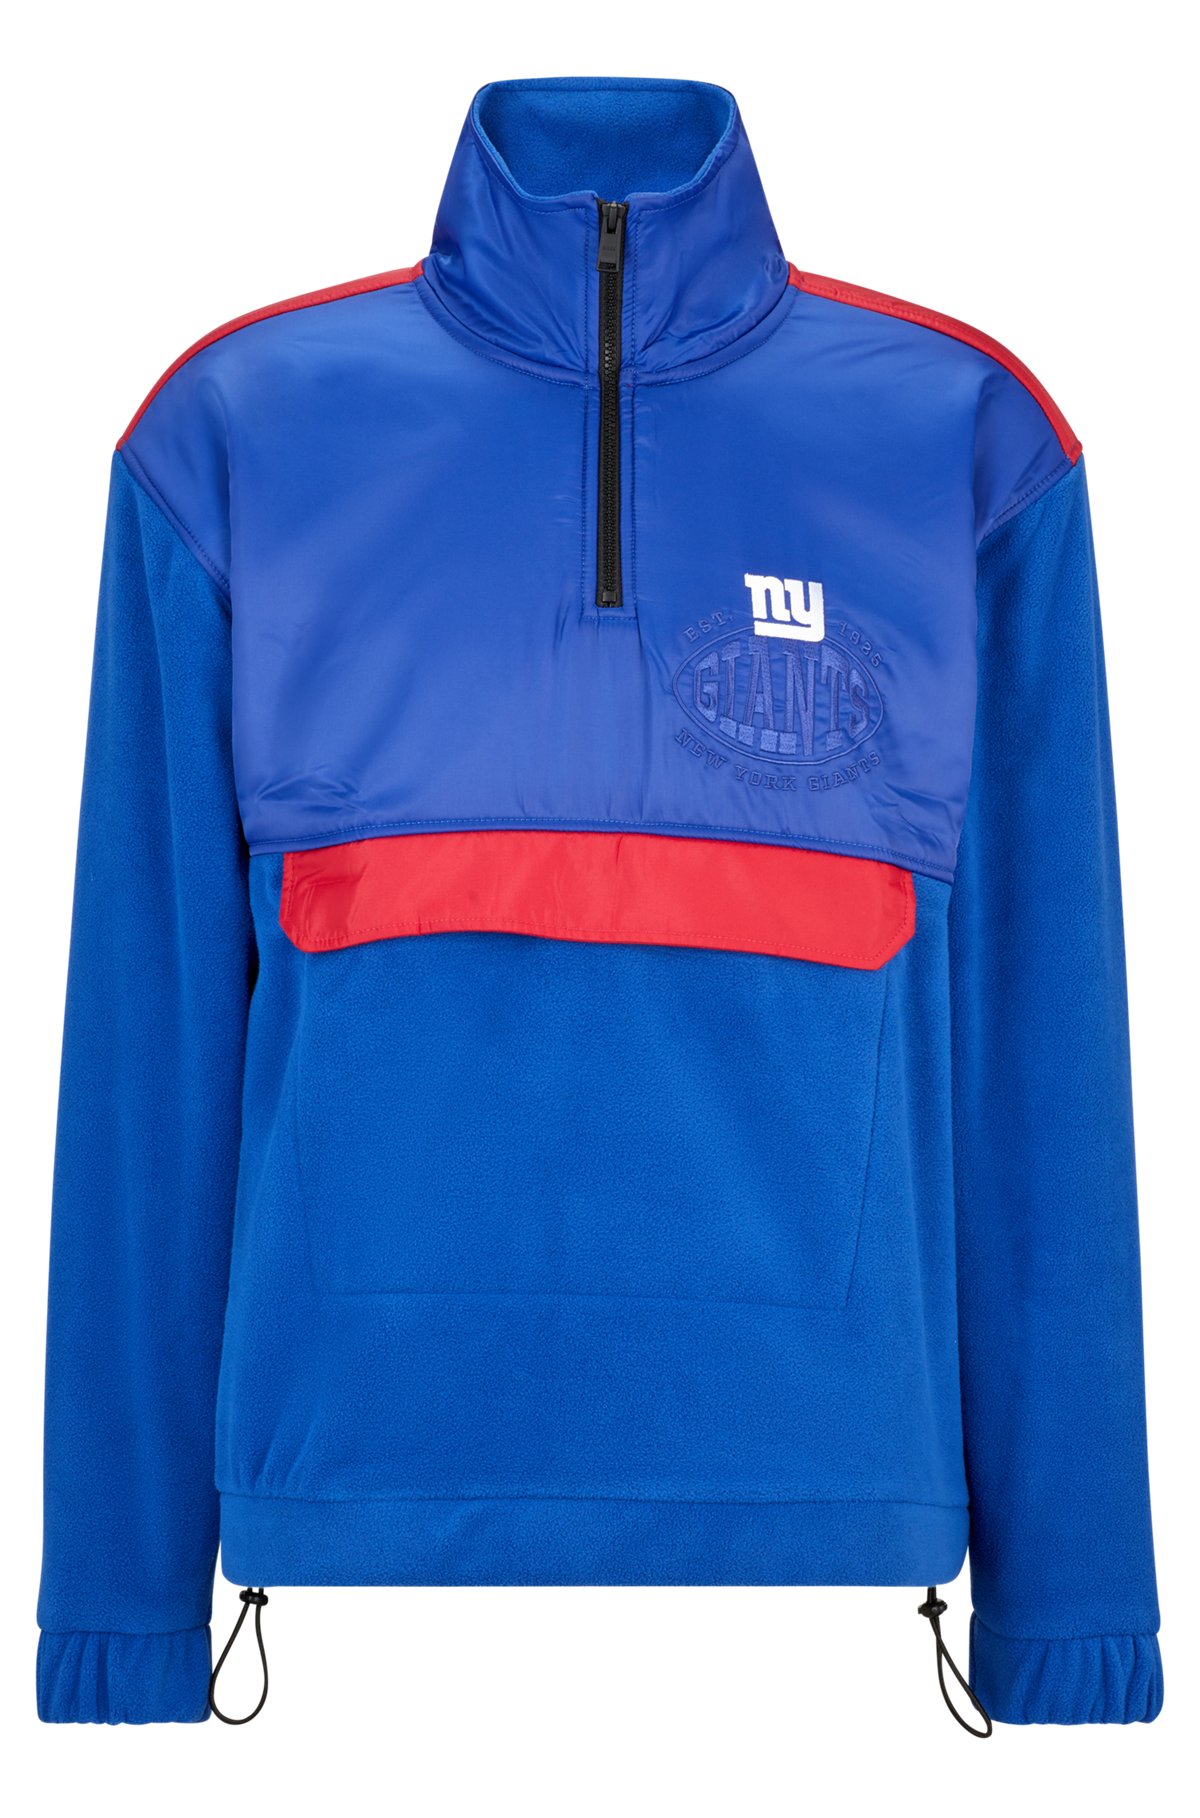  BOSS x NFL zip-neck sweatshirt with collaborative branding, Giants